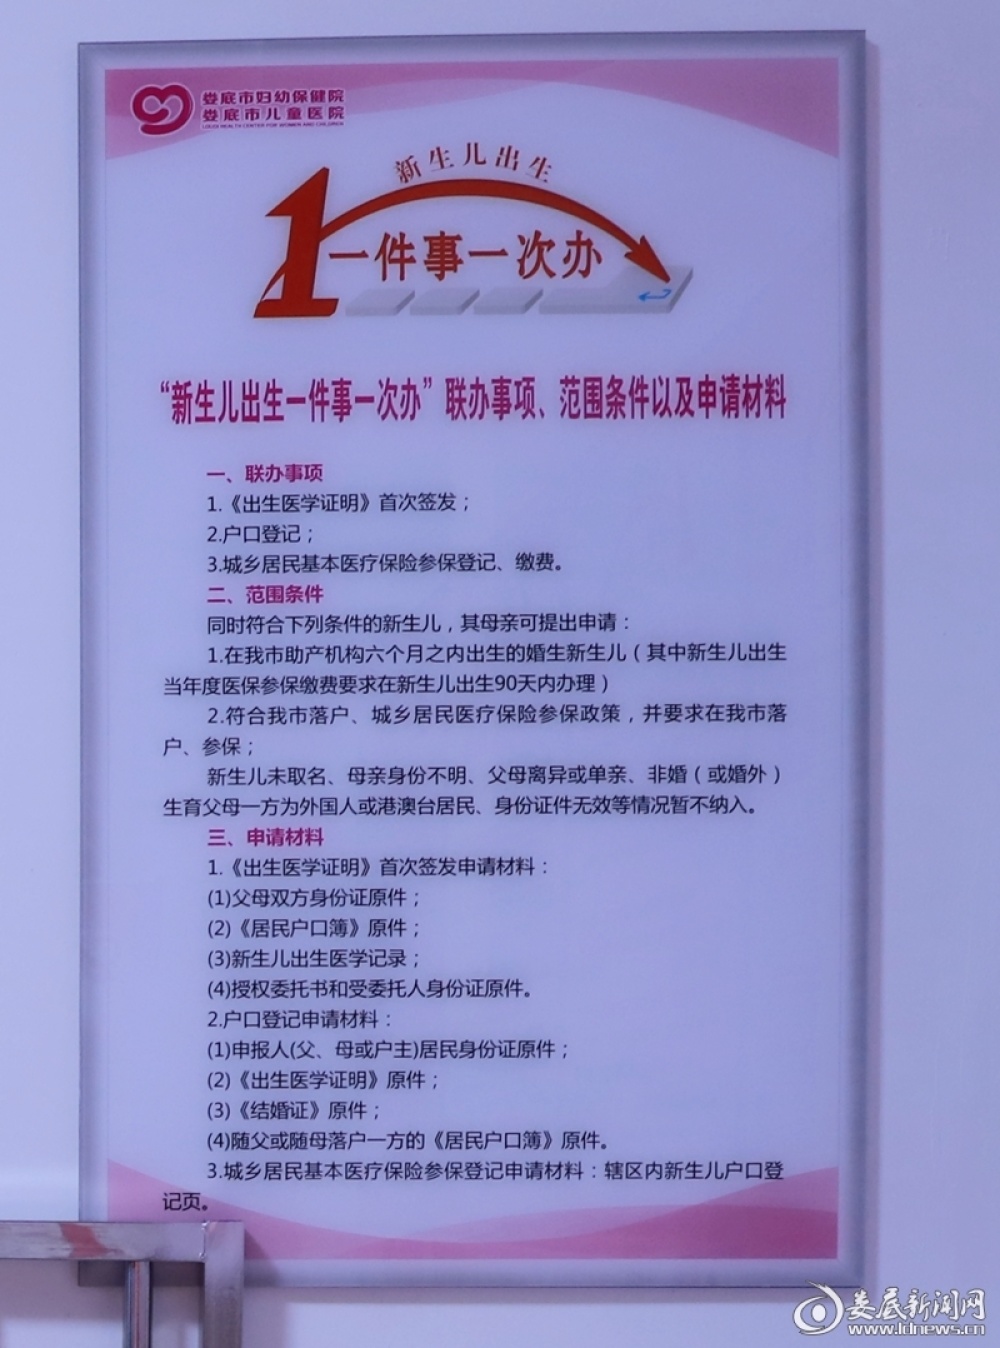 包含北京市海淀妇幼保健院专家跑腿代预约，在线客服为您解答